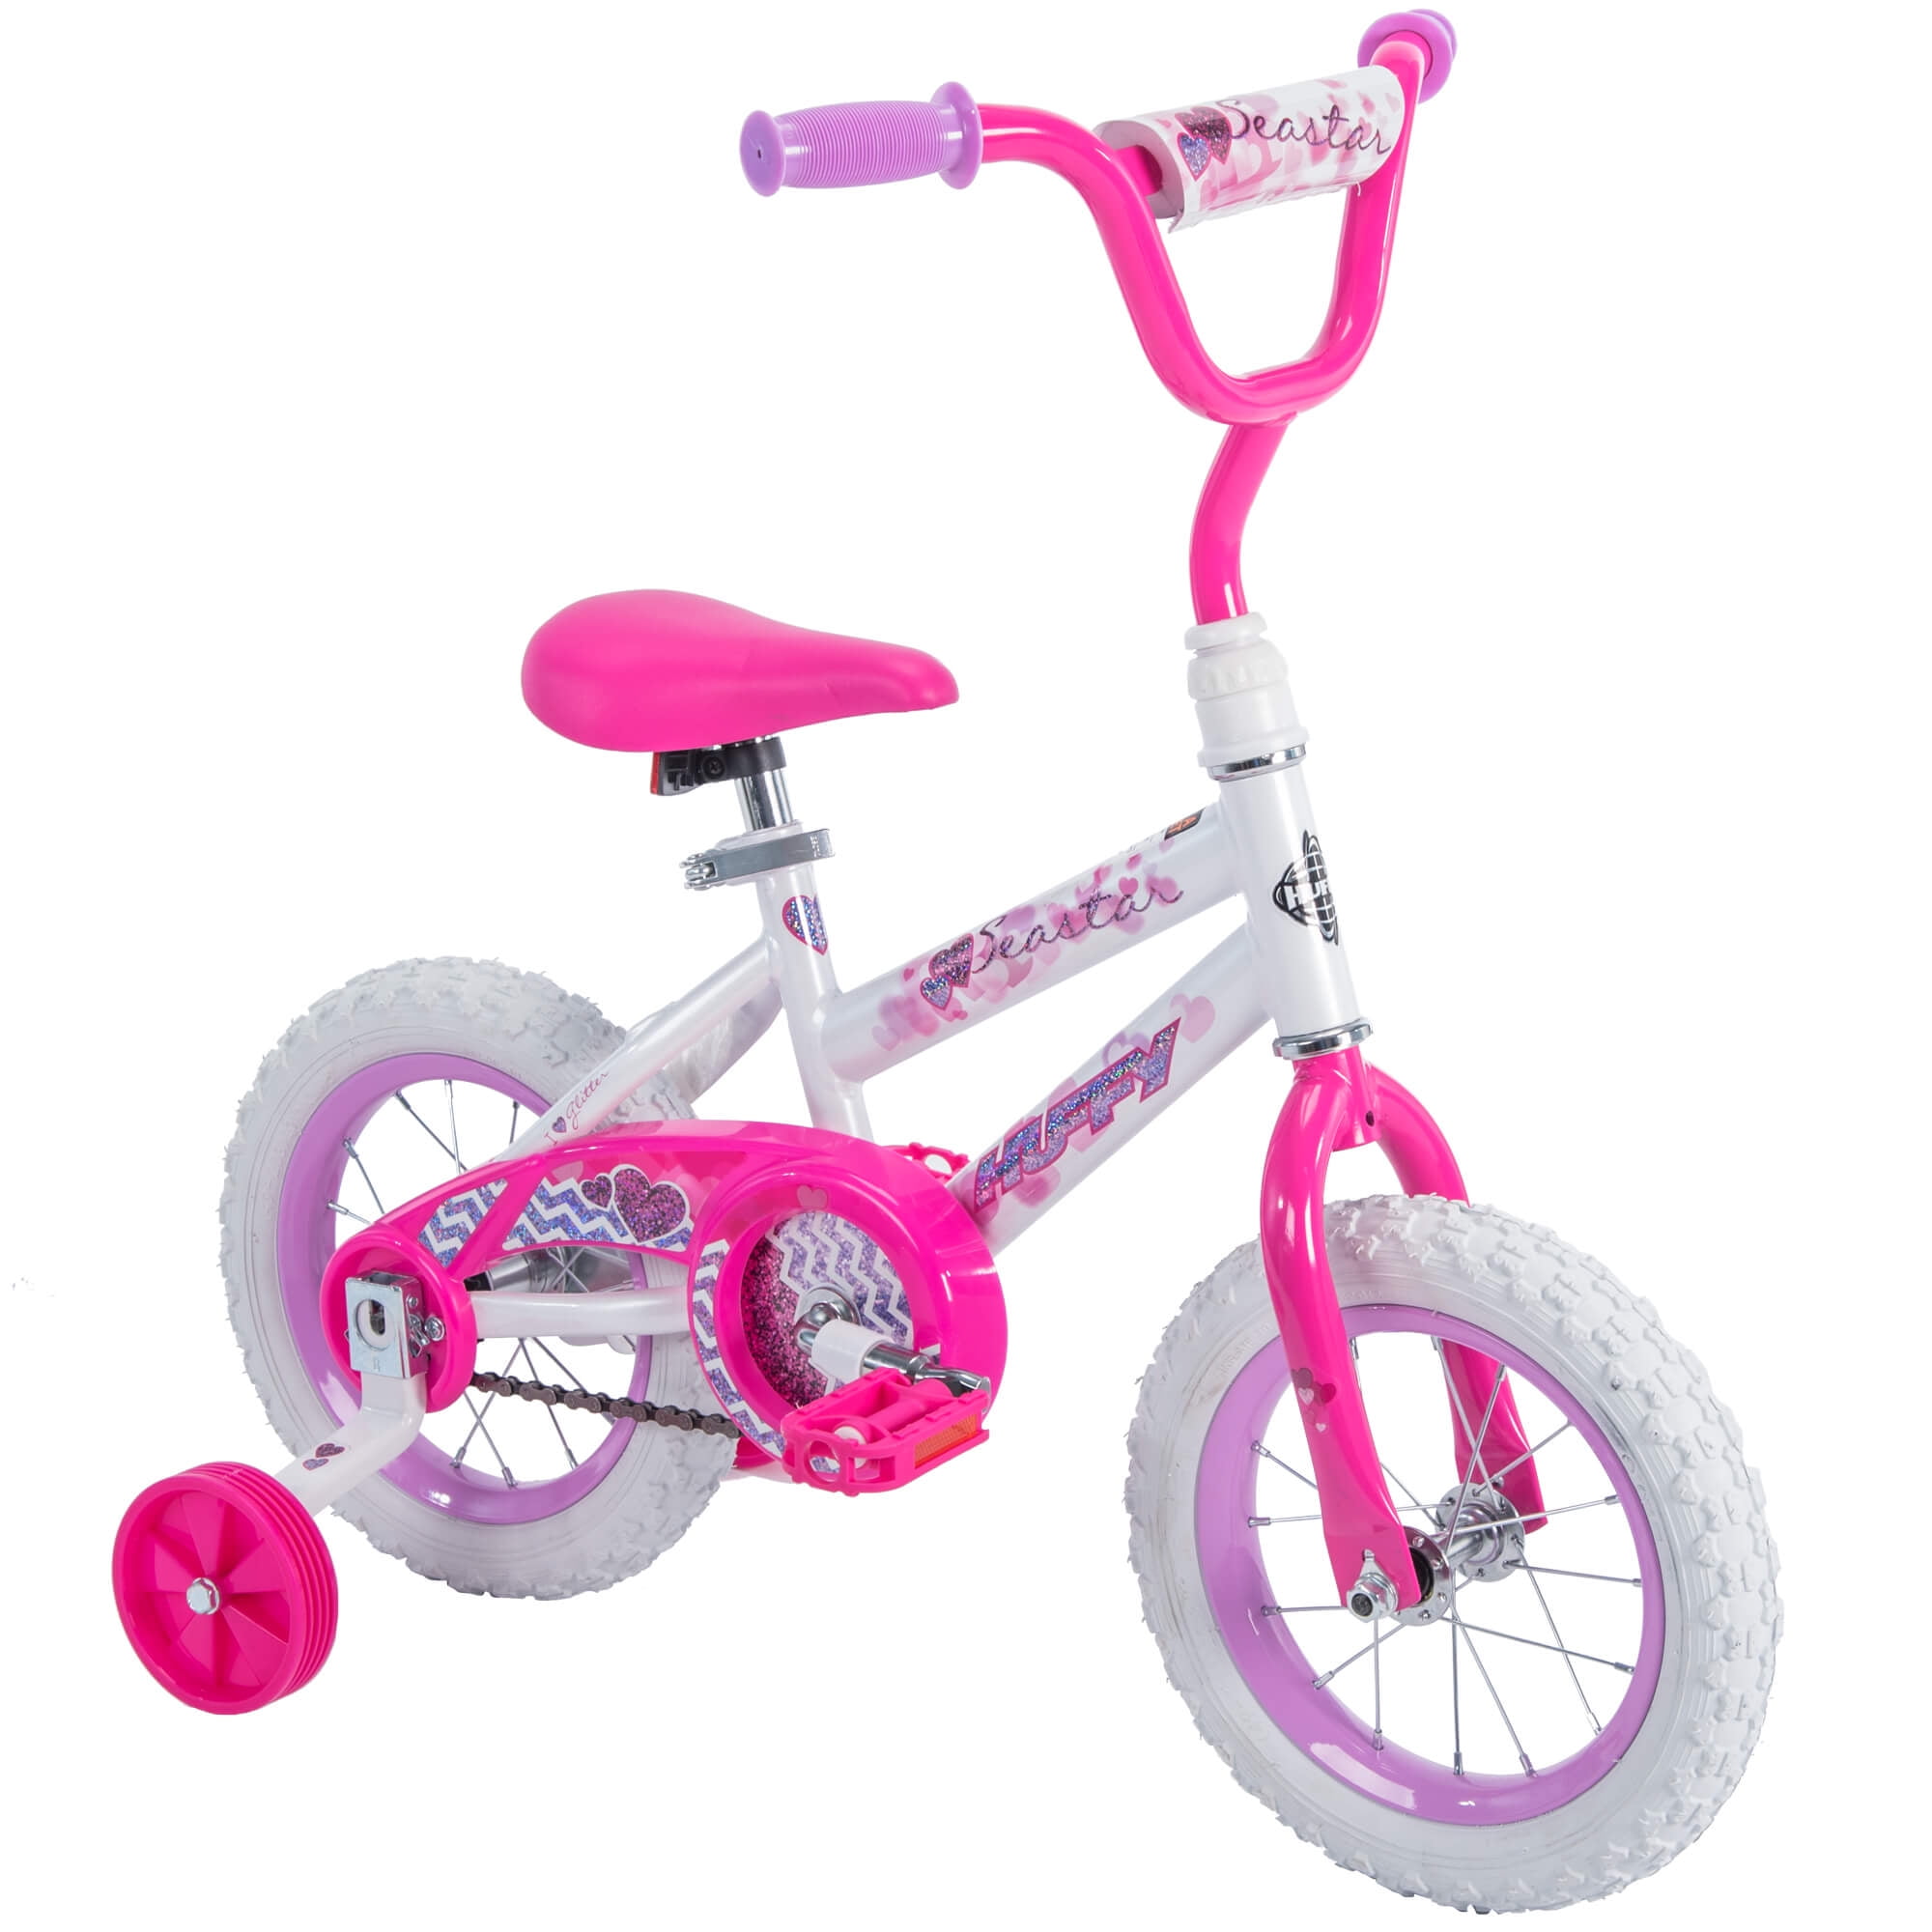 Huffy 12" Girls' Sturdy Pink Bike w/ Fantastic Brake & Training Wheel Easy Setup 